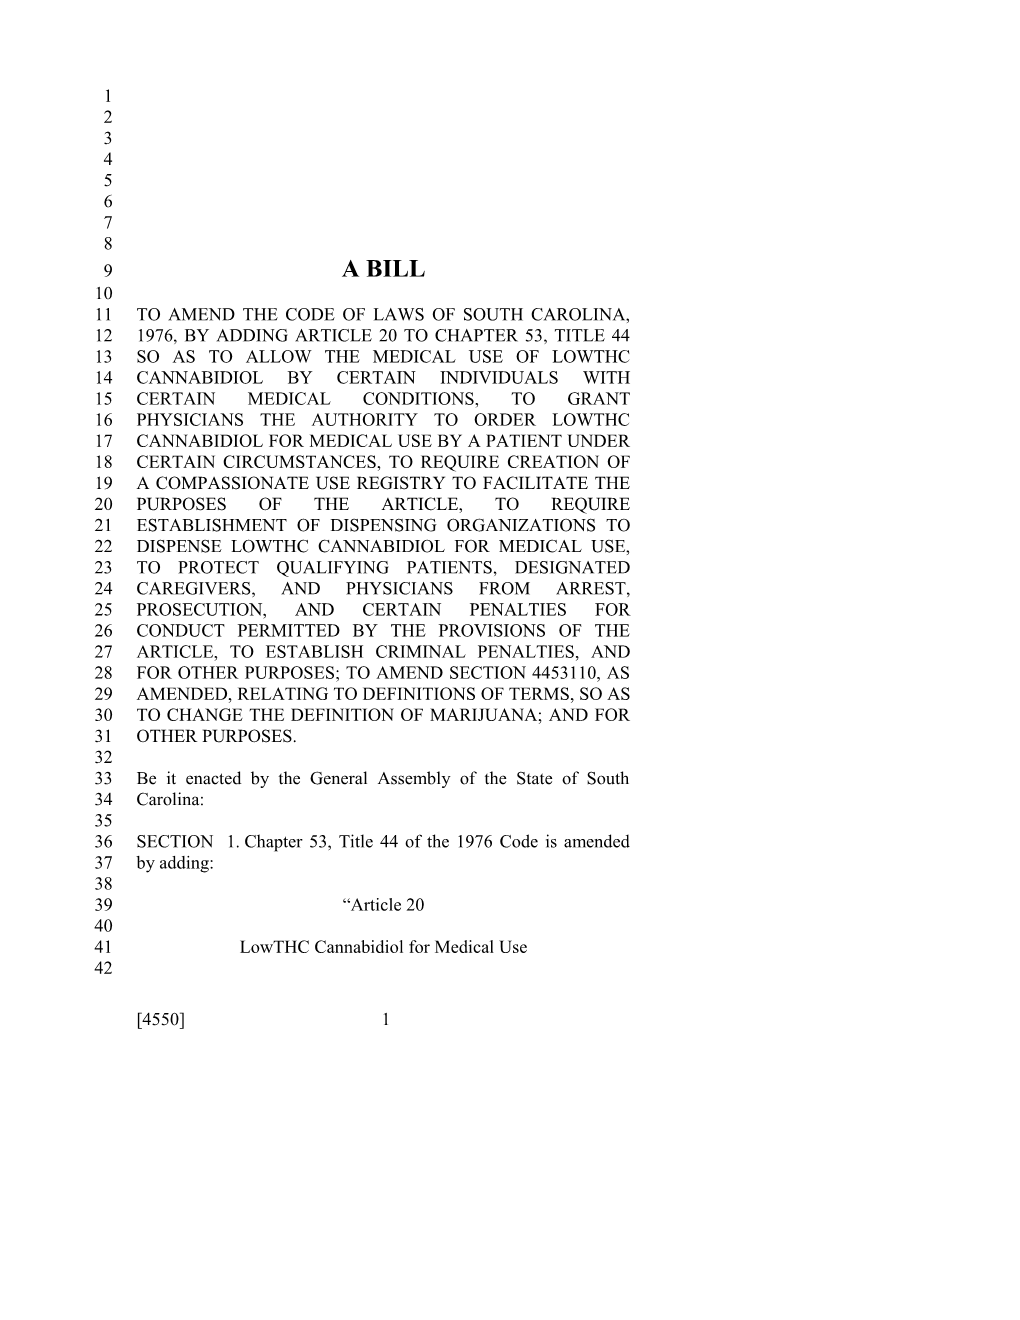 2015-2016 Bill 4550 Text of Previous Version (Dec. 10, 2015) - South Carolina Legislature Online